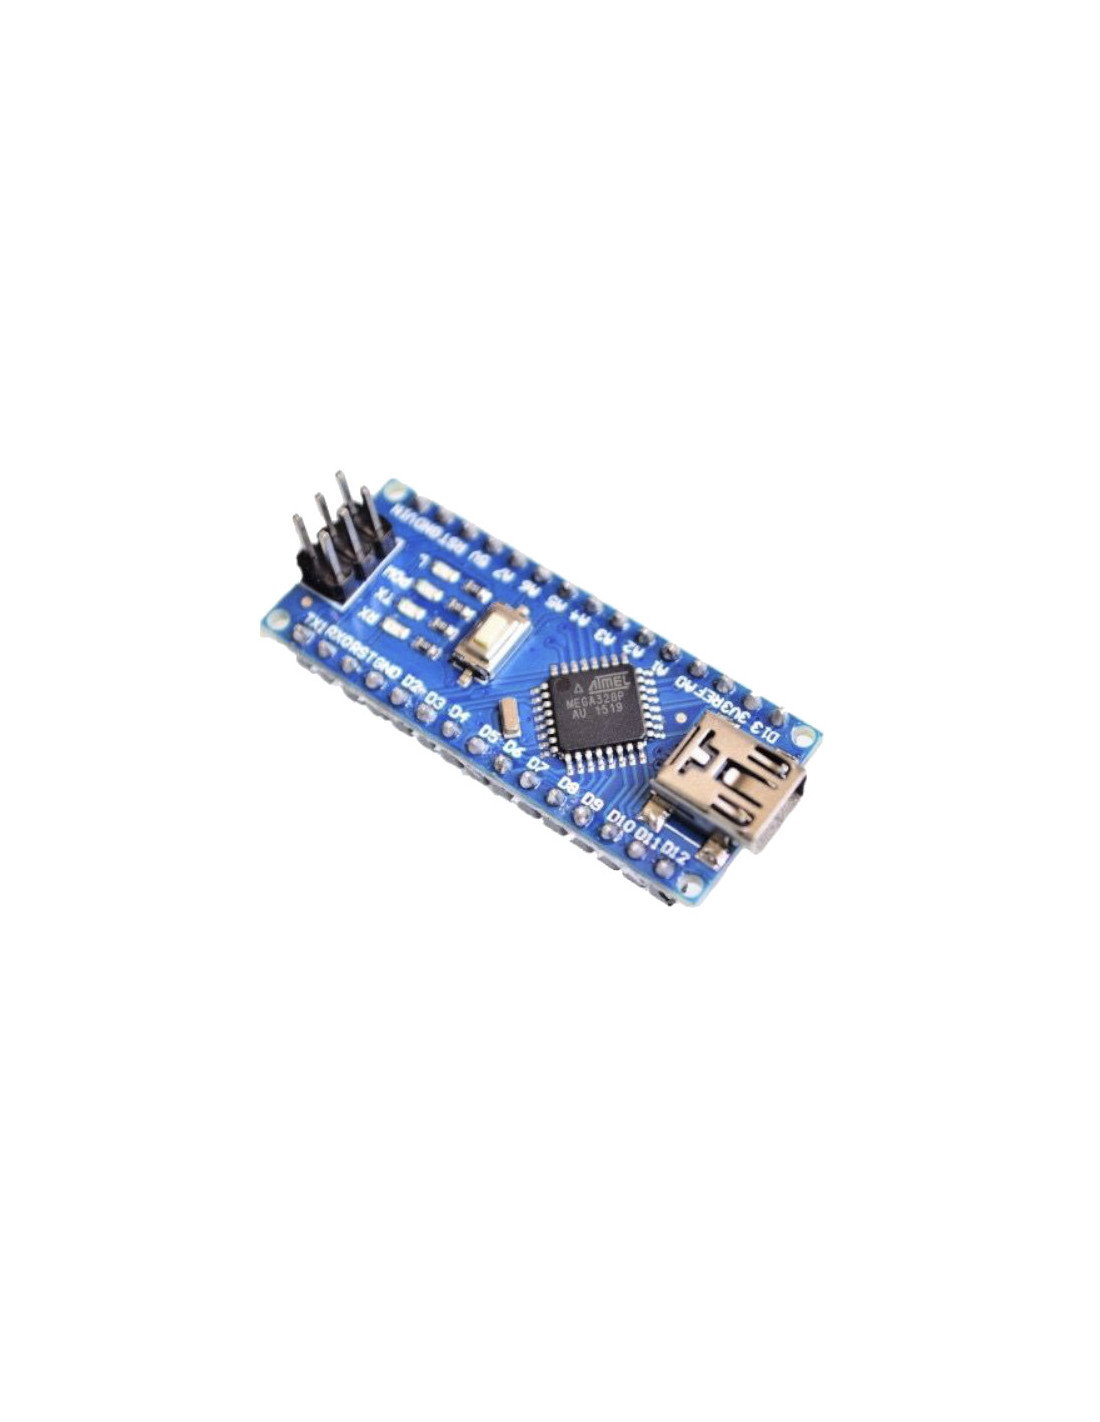 Arduino NANO compatible CH340 + cable mini USB